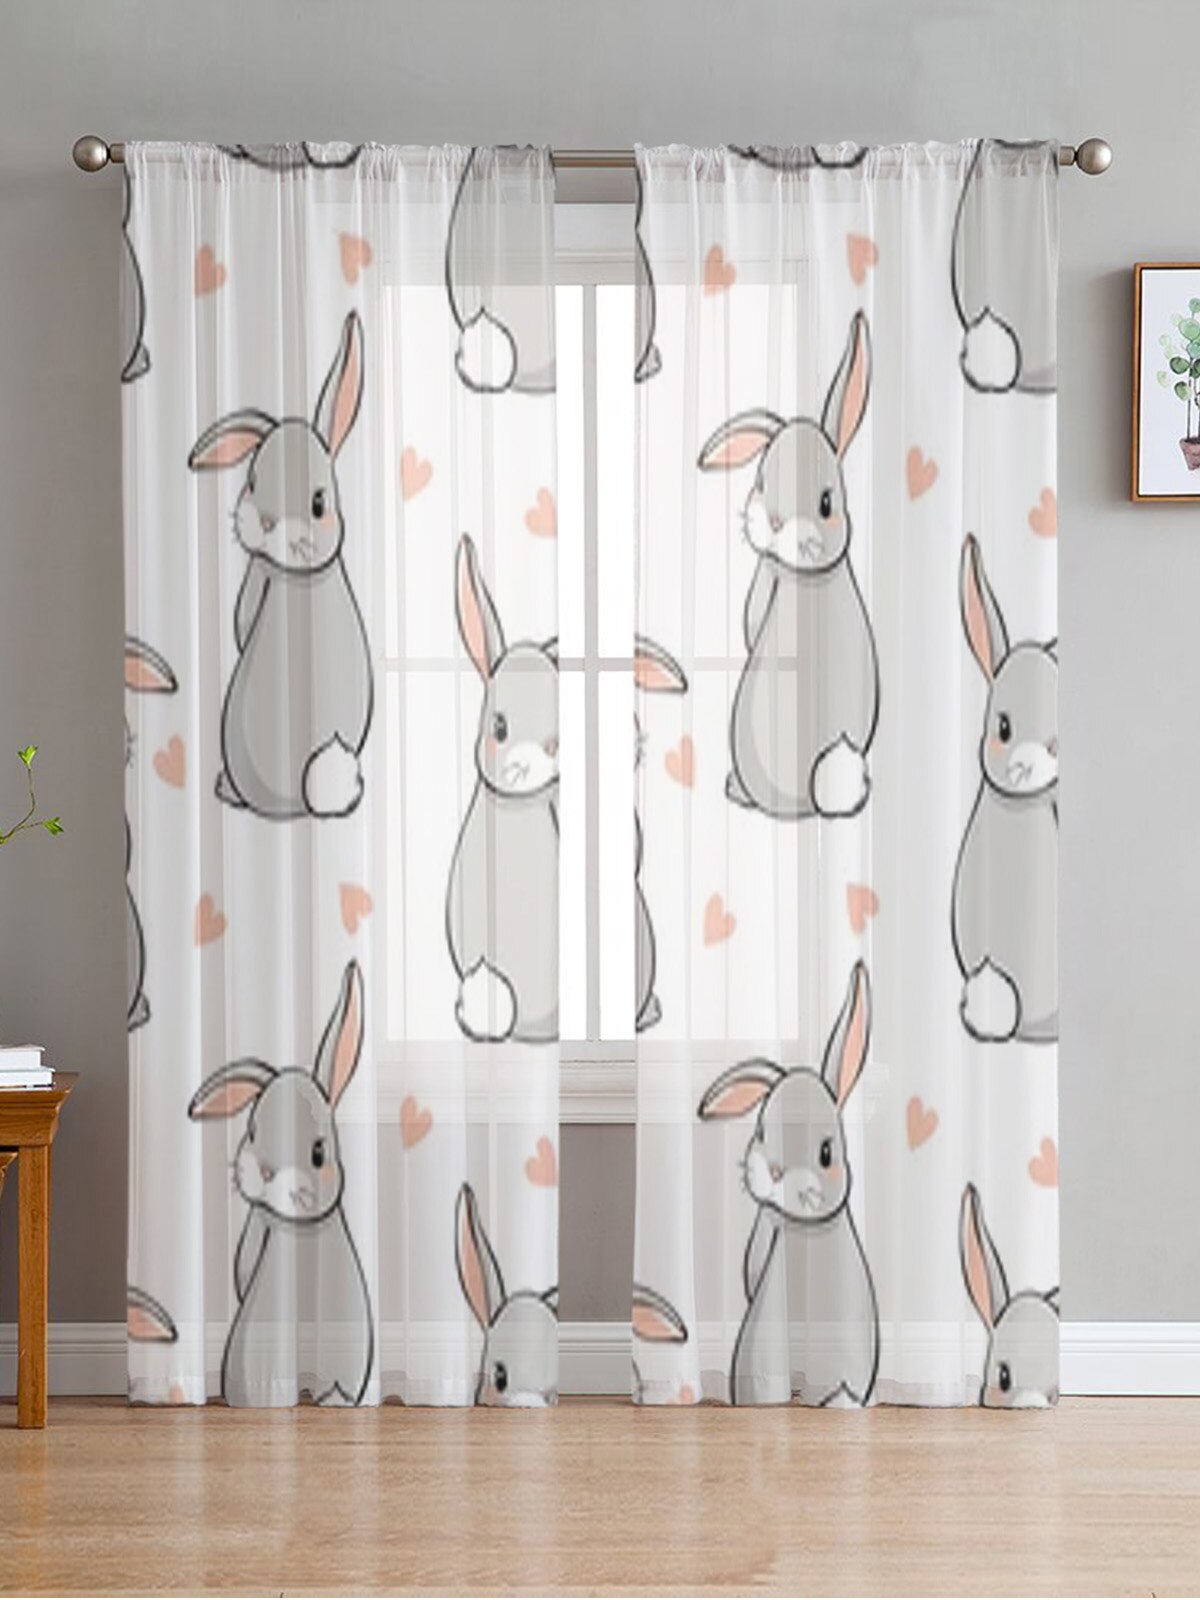 Cute Bunnies Sheer Curtains